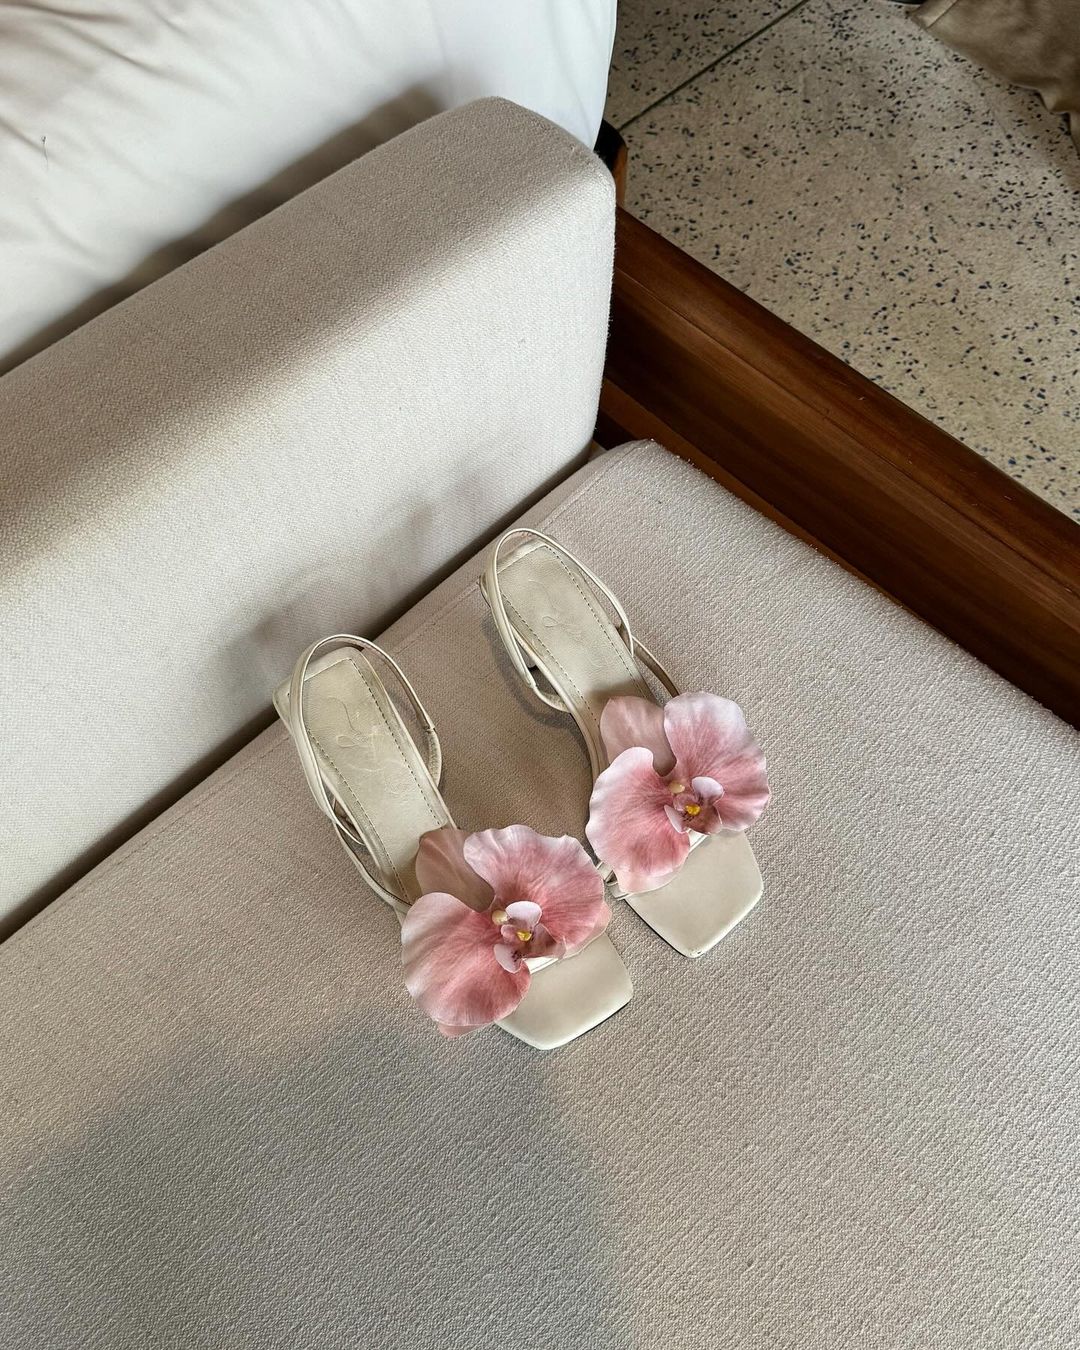 Ljetni it komad su sandale s 3D cvijećem. Znamo kako ih možete napraviti sami